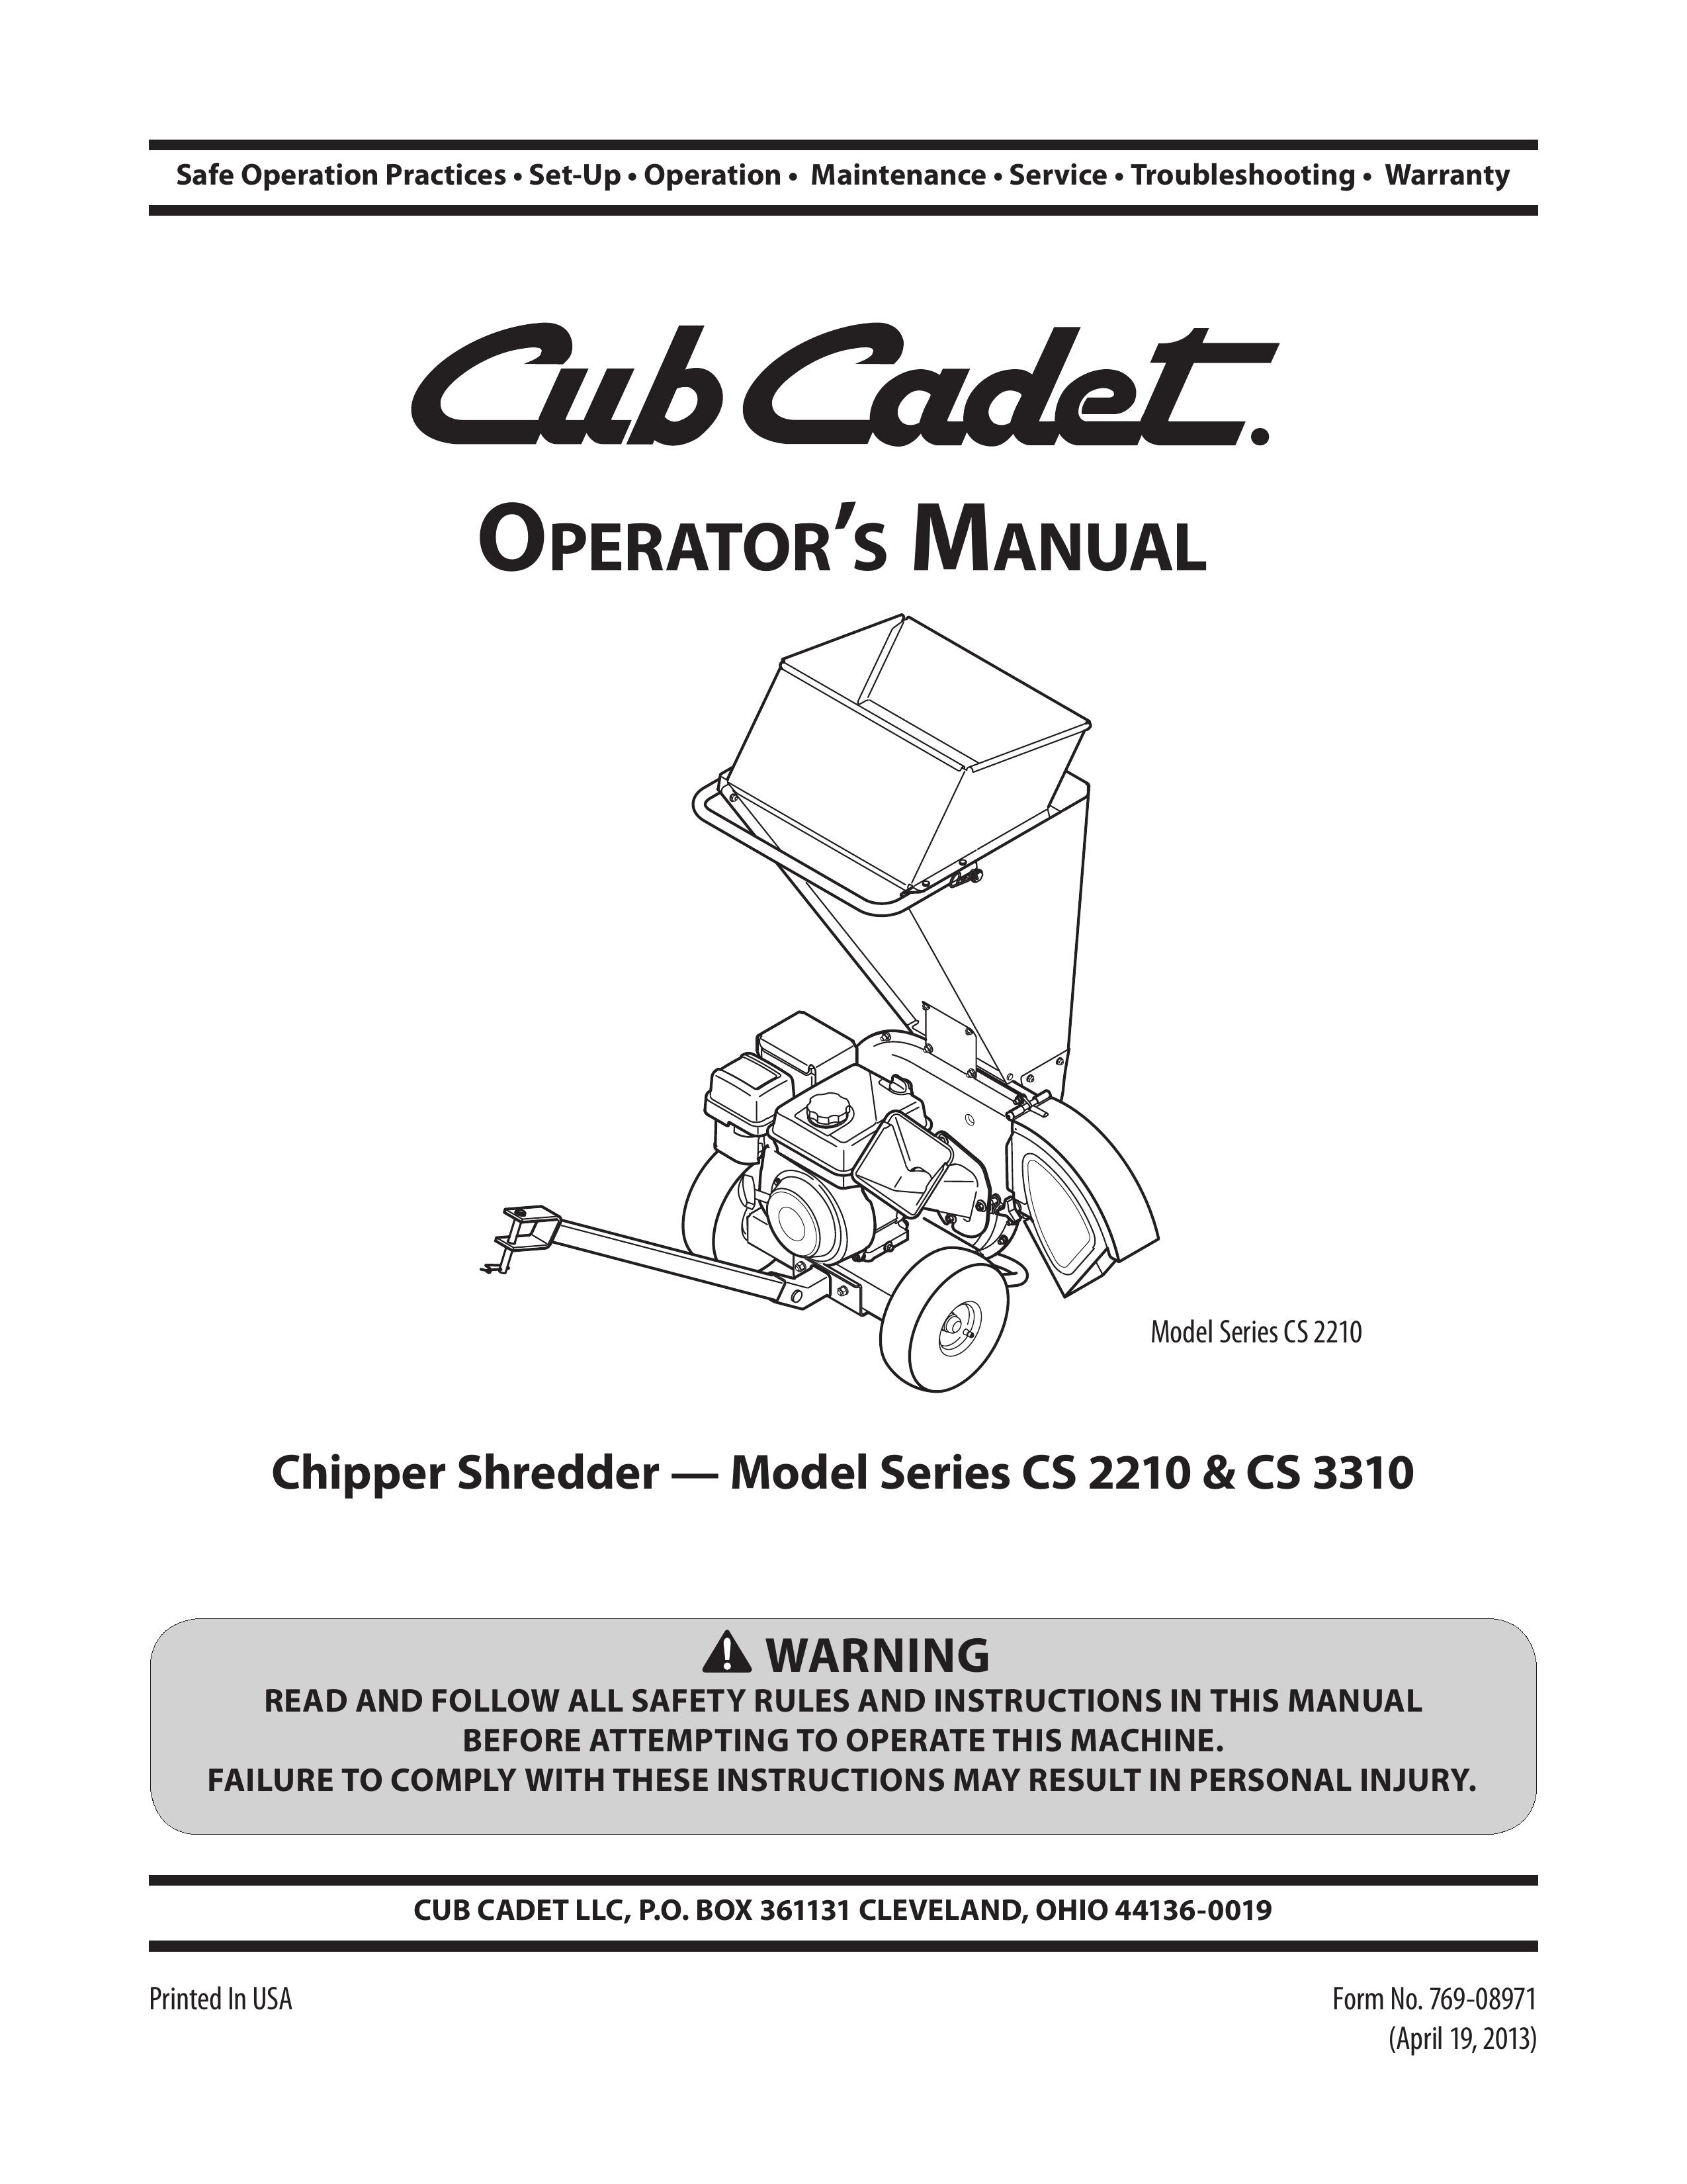 Cub Cadet cs3310 Chipper User Manual